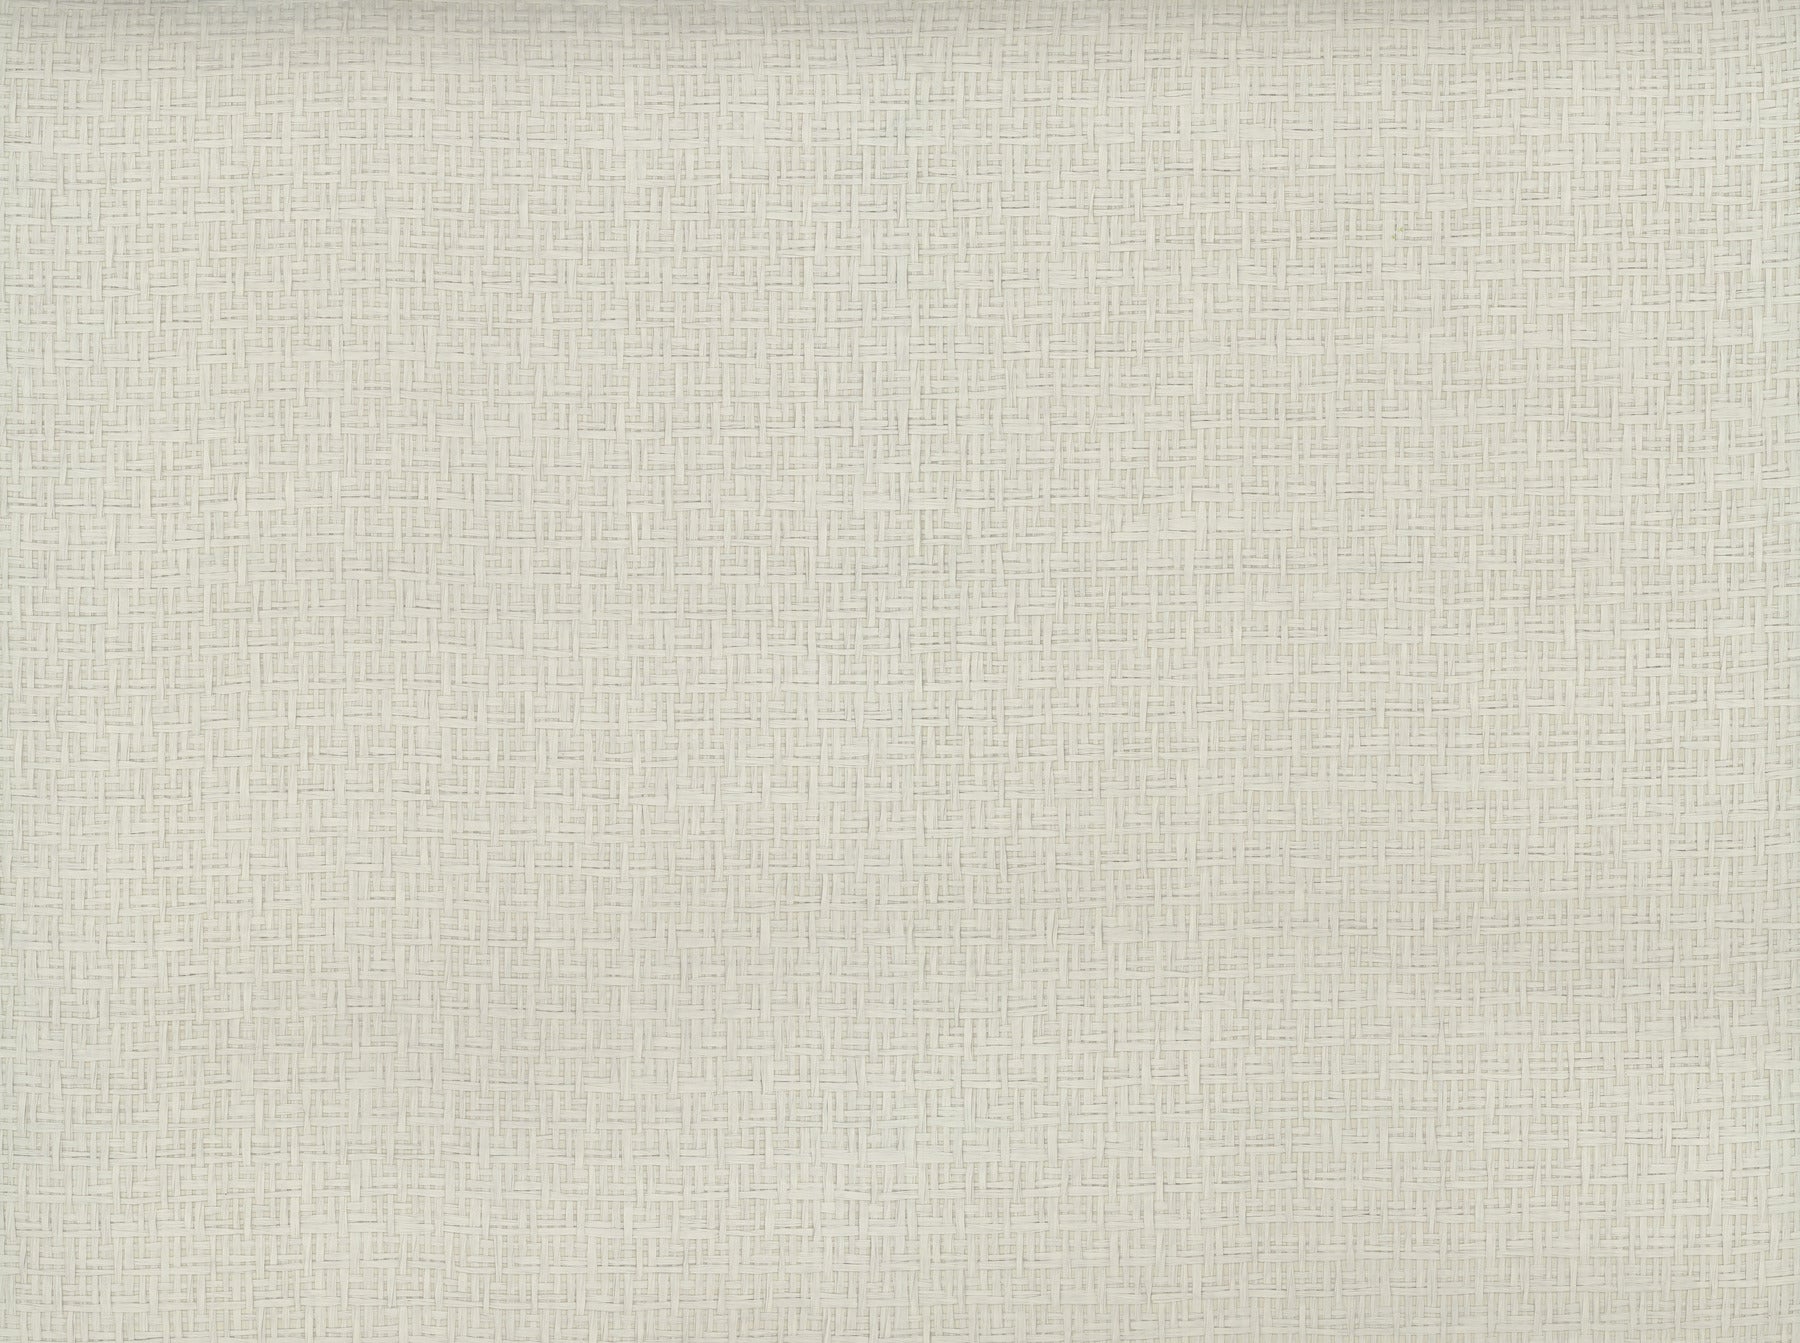 Tatami Weave Wallpaper Wallpaper Ronald Redding Designs Yard Pale Grey 